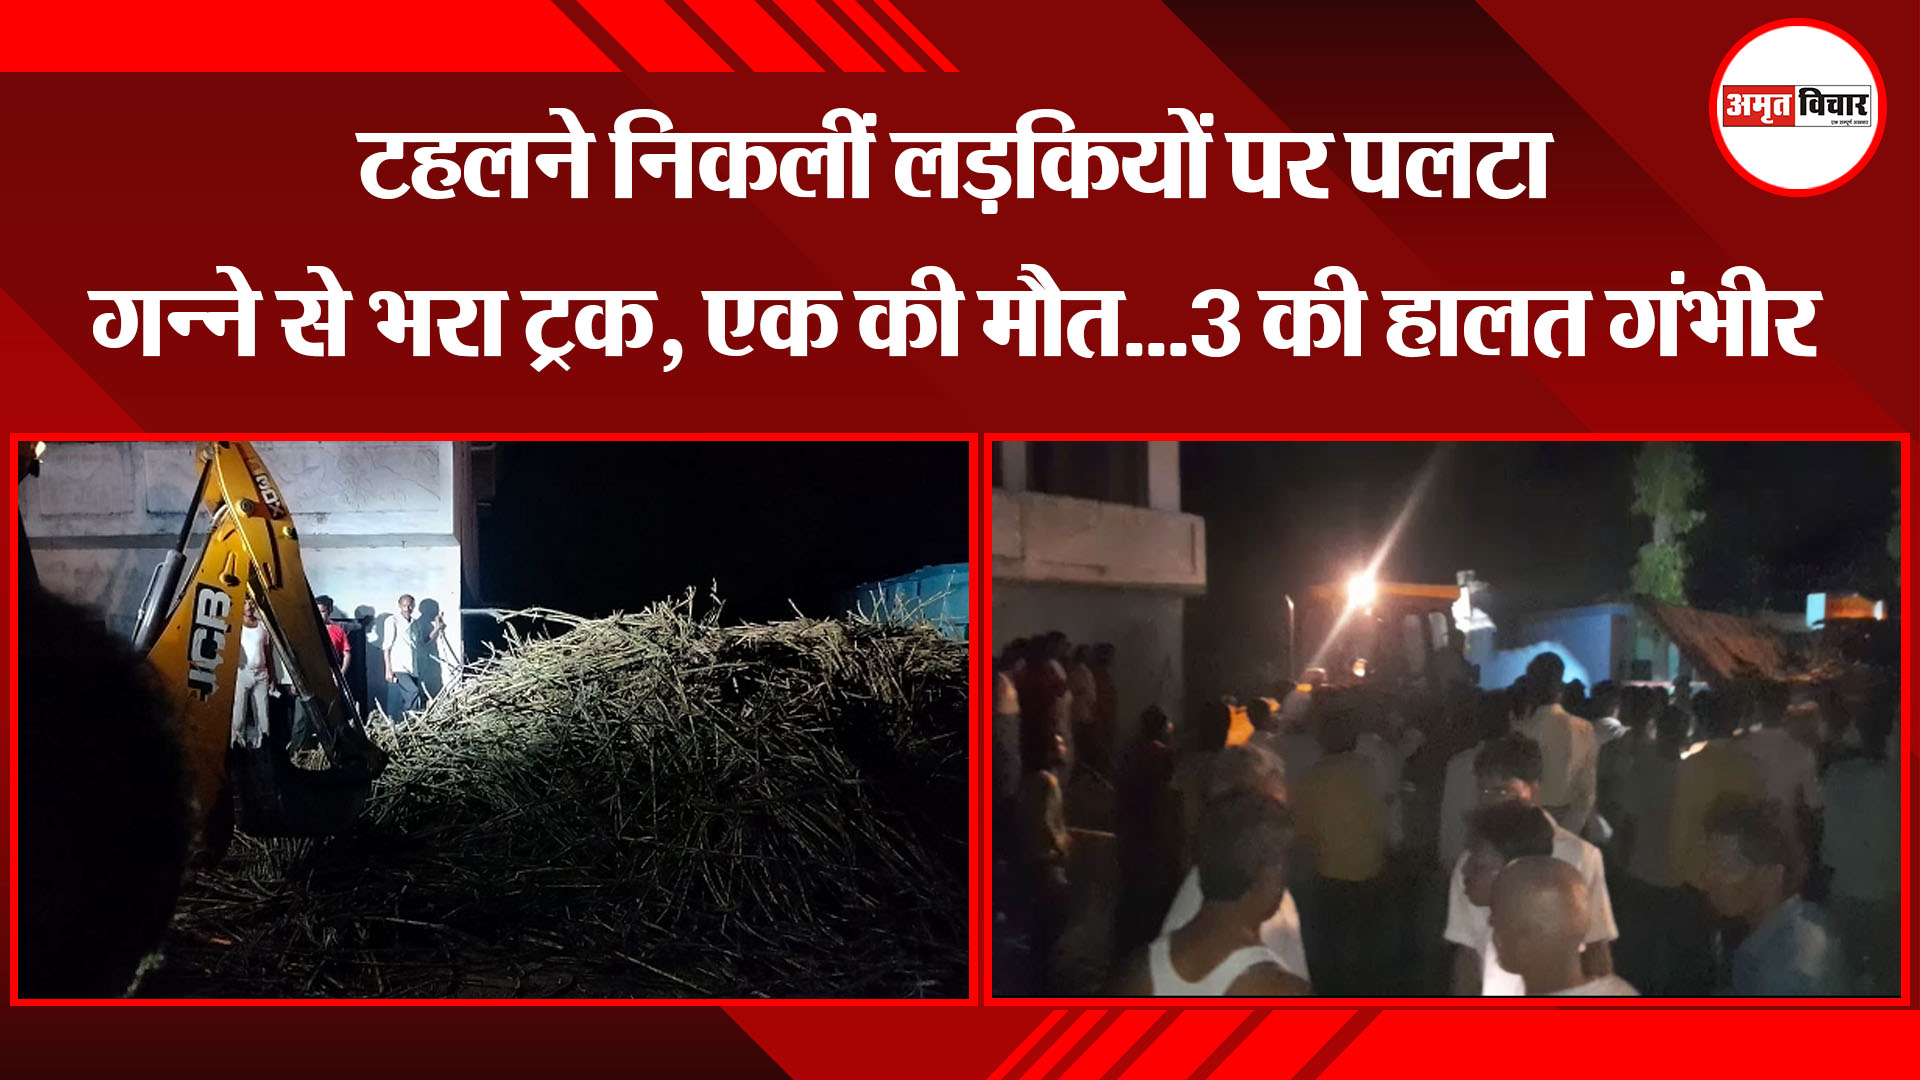 सीतापुर: टहलने निकलीं लड़कियों पर पलटा गन्ने से भरा ट्रक, एक की मौत...3 की हालत गंभीर